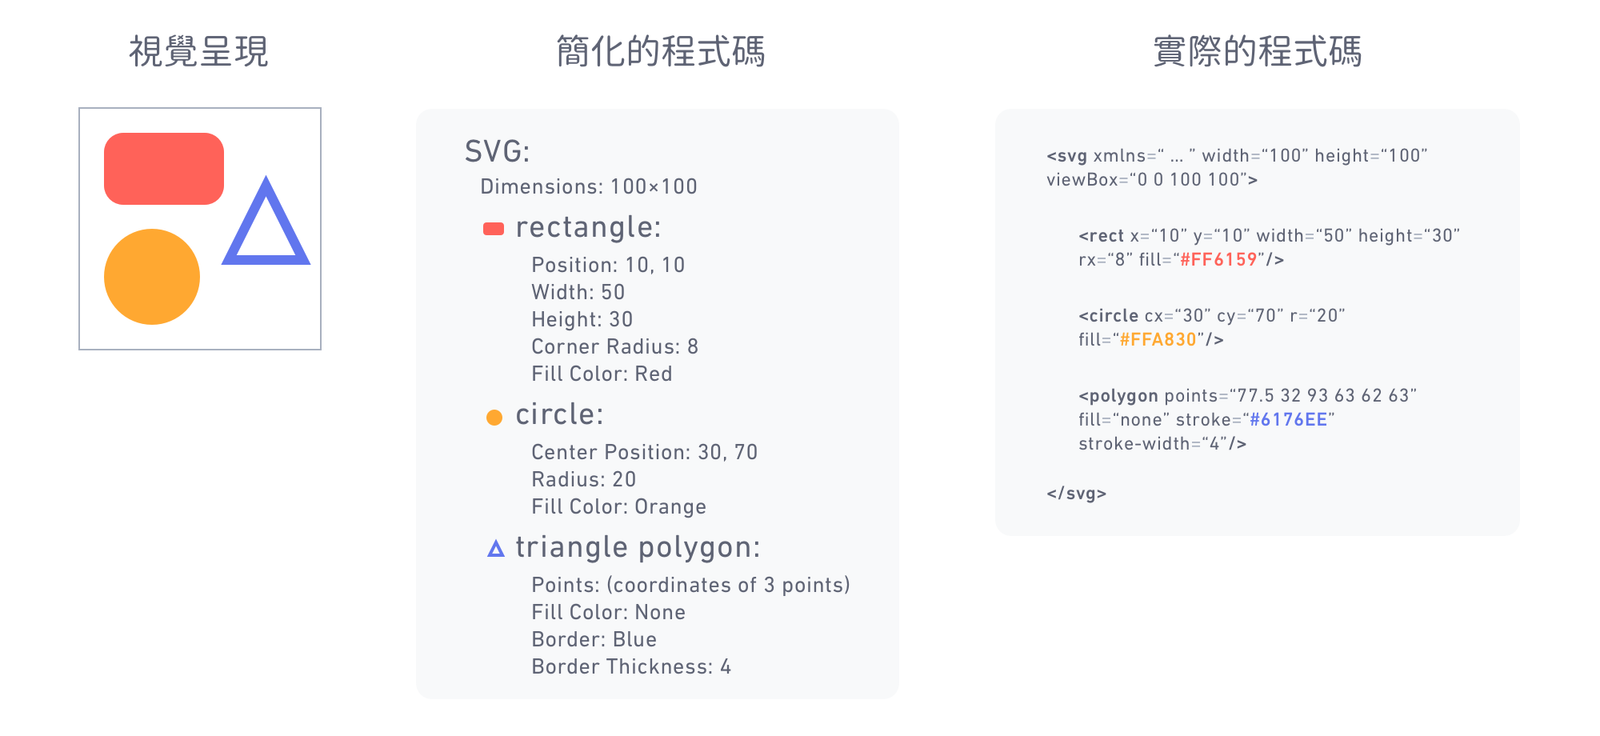 解釋 SVG 的視覺呈現，實際上是由程式碼編寫的